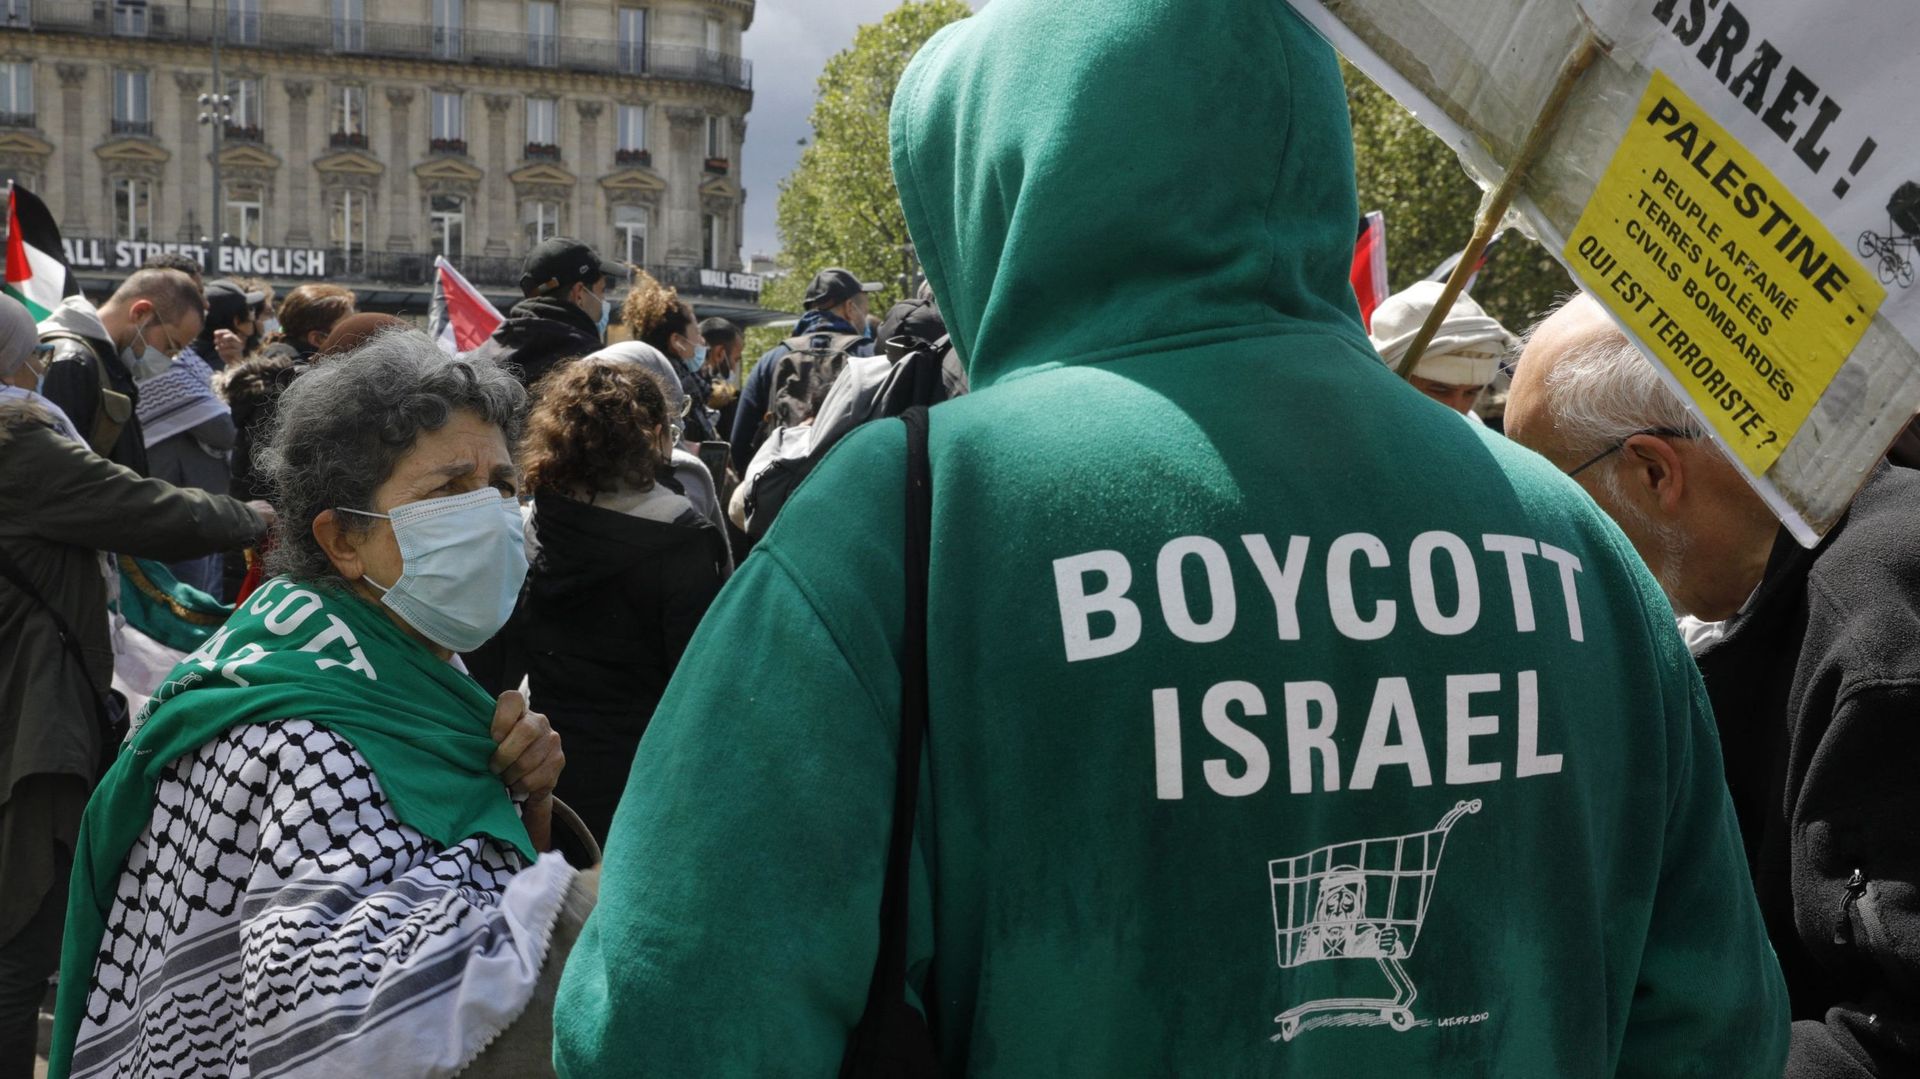 Un homme porte un sweat à capuche sur lequel on peut lire "Boycott Israël" alors que des manifestants crient des slogans et agitent des drapeaux palestiniens lors d’une manifestation de solidarité avec le peuple palestinien sur la place de la République à